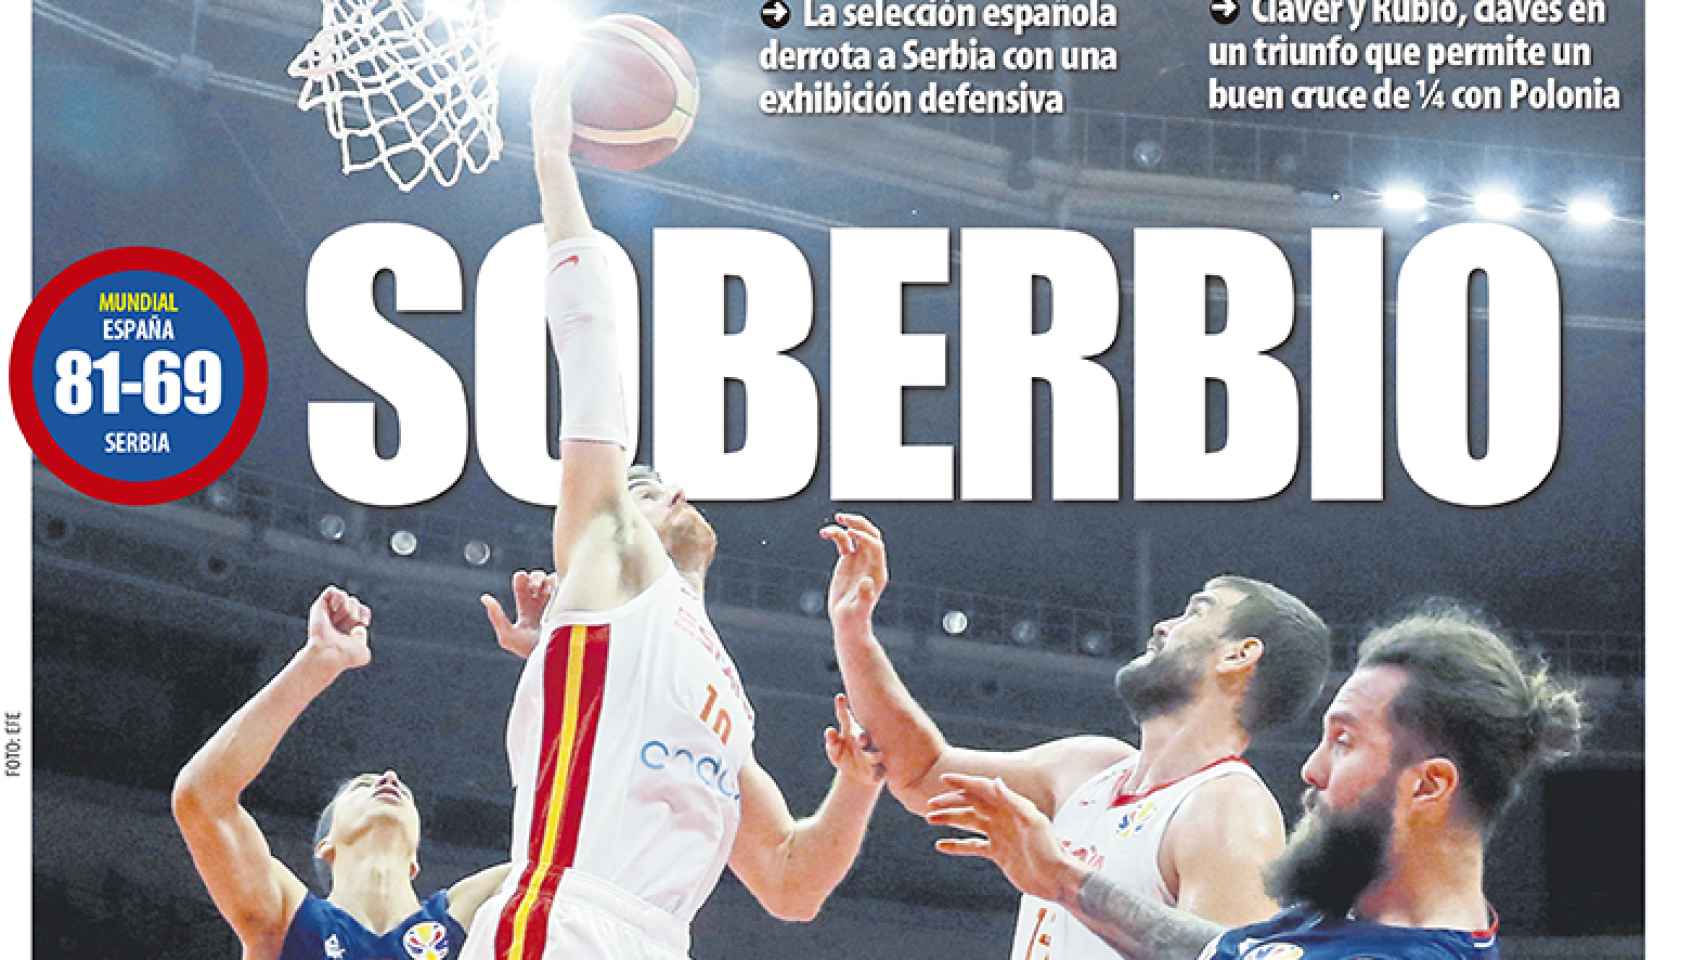 La portada del diario Mundo Deportivo (09/09/2019)